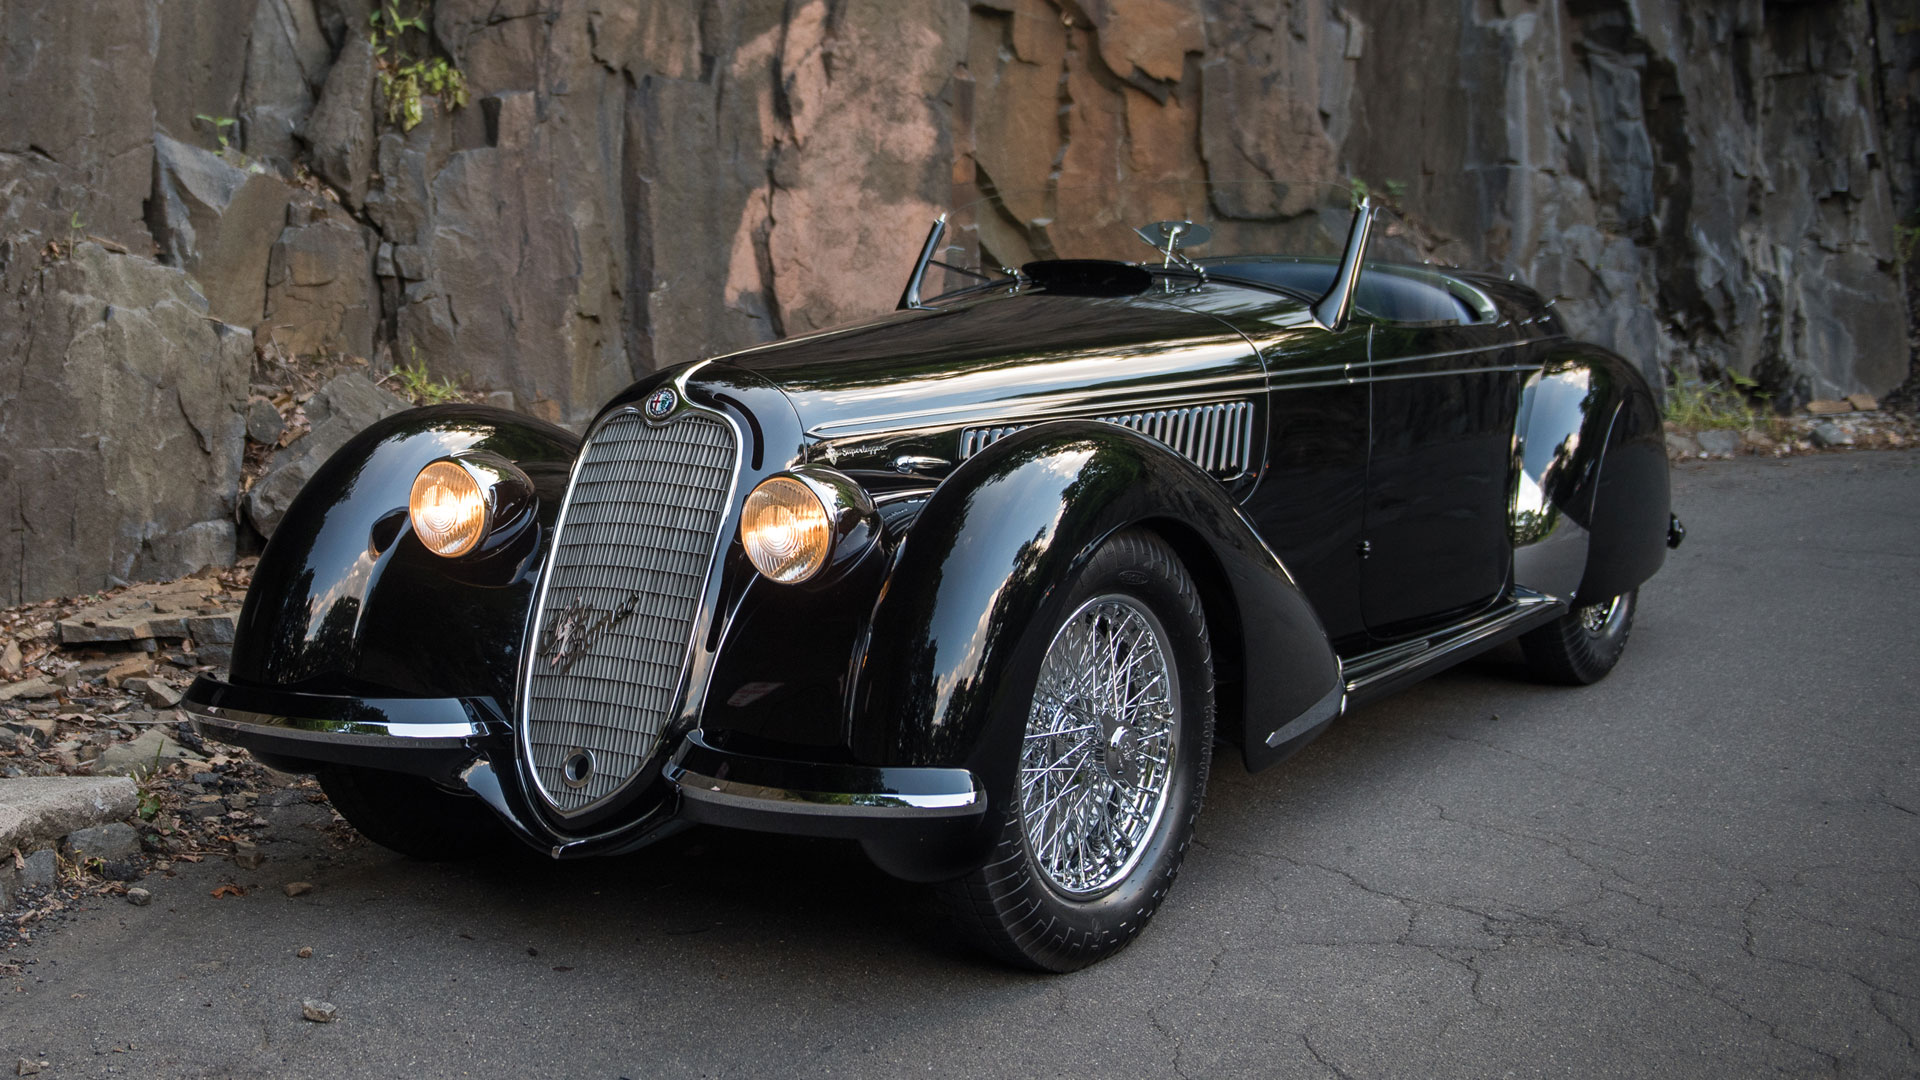 19. 1939 Alfa Romeo 8C 2900B Lungo Spider – $19,800,000